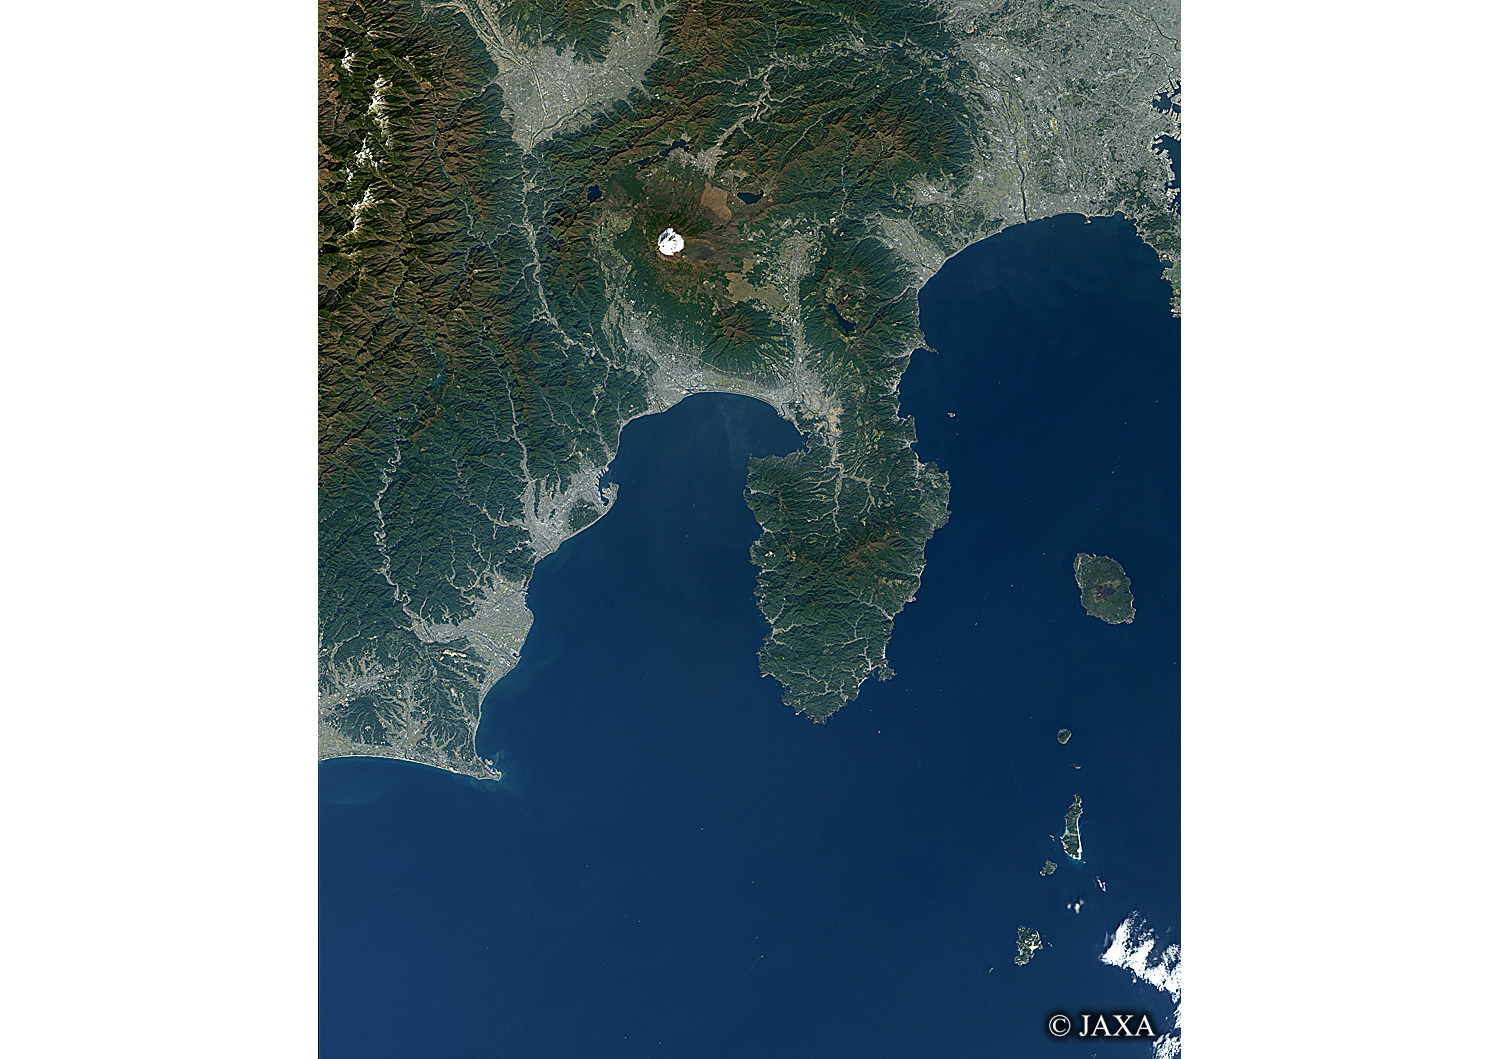 だいちから見た日本の都市 富士山と太平洋:衛星画像